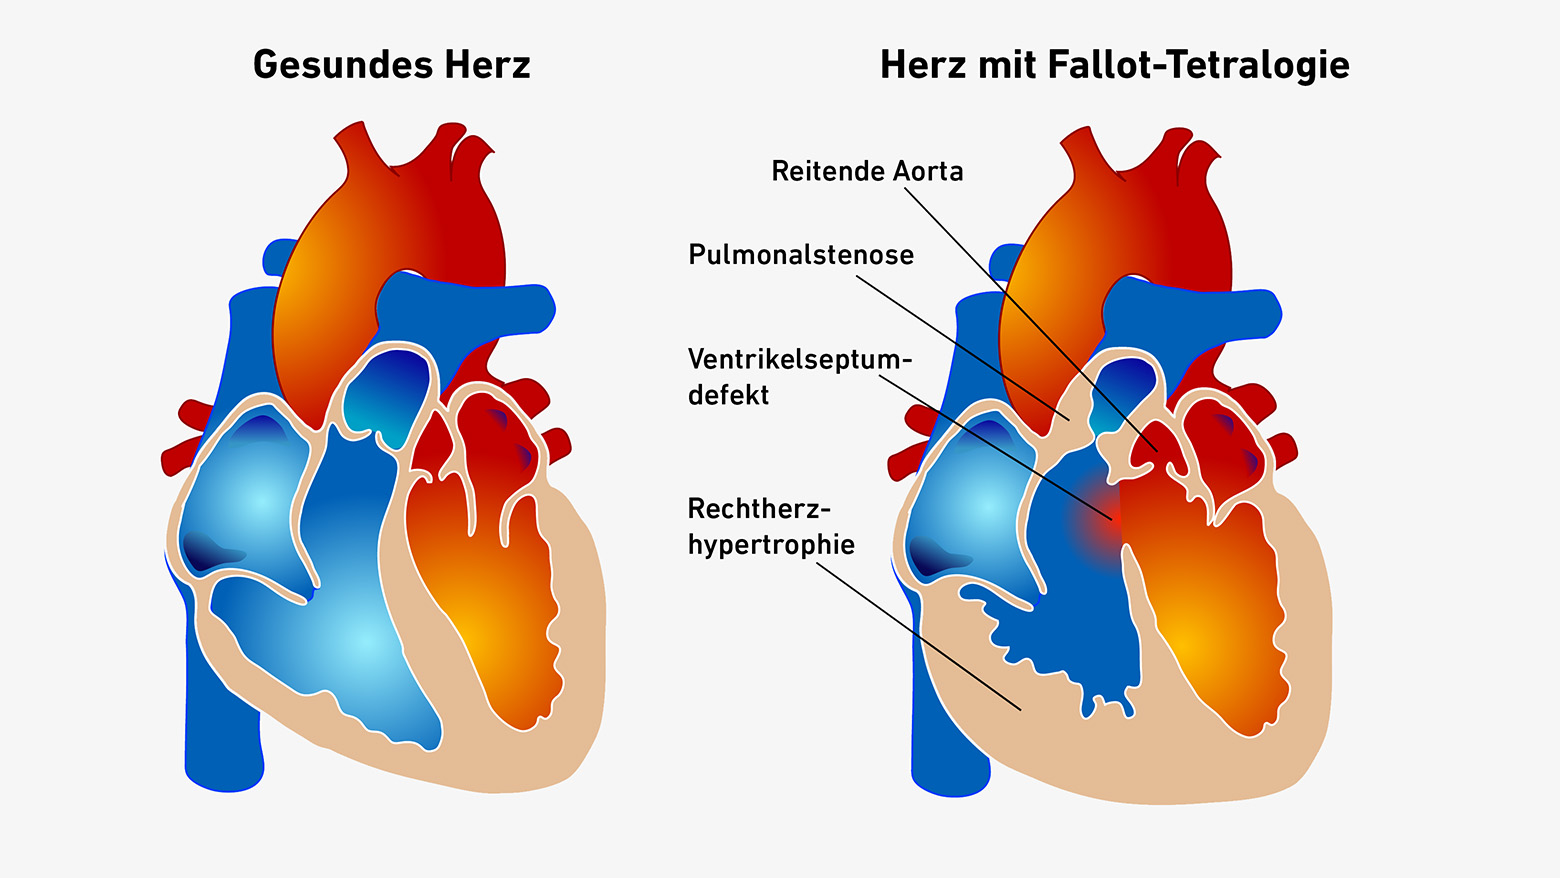 Vergr?sserte Ansicht: Schematische Darstellung eines gesunden Herzens neben einem Herzen mit Fallot-Tetralogie, bei welchem die Trennwand zwischen den beiden Herzkammern ein Loch aufweist.